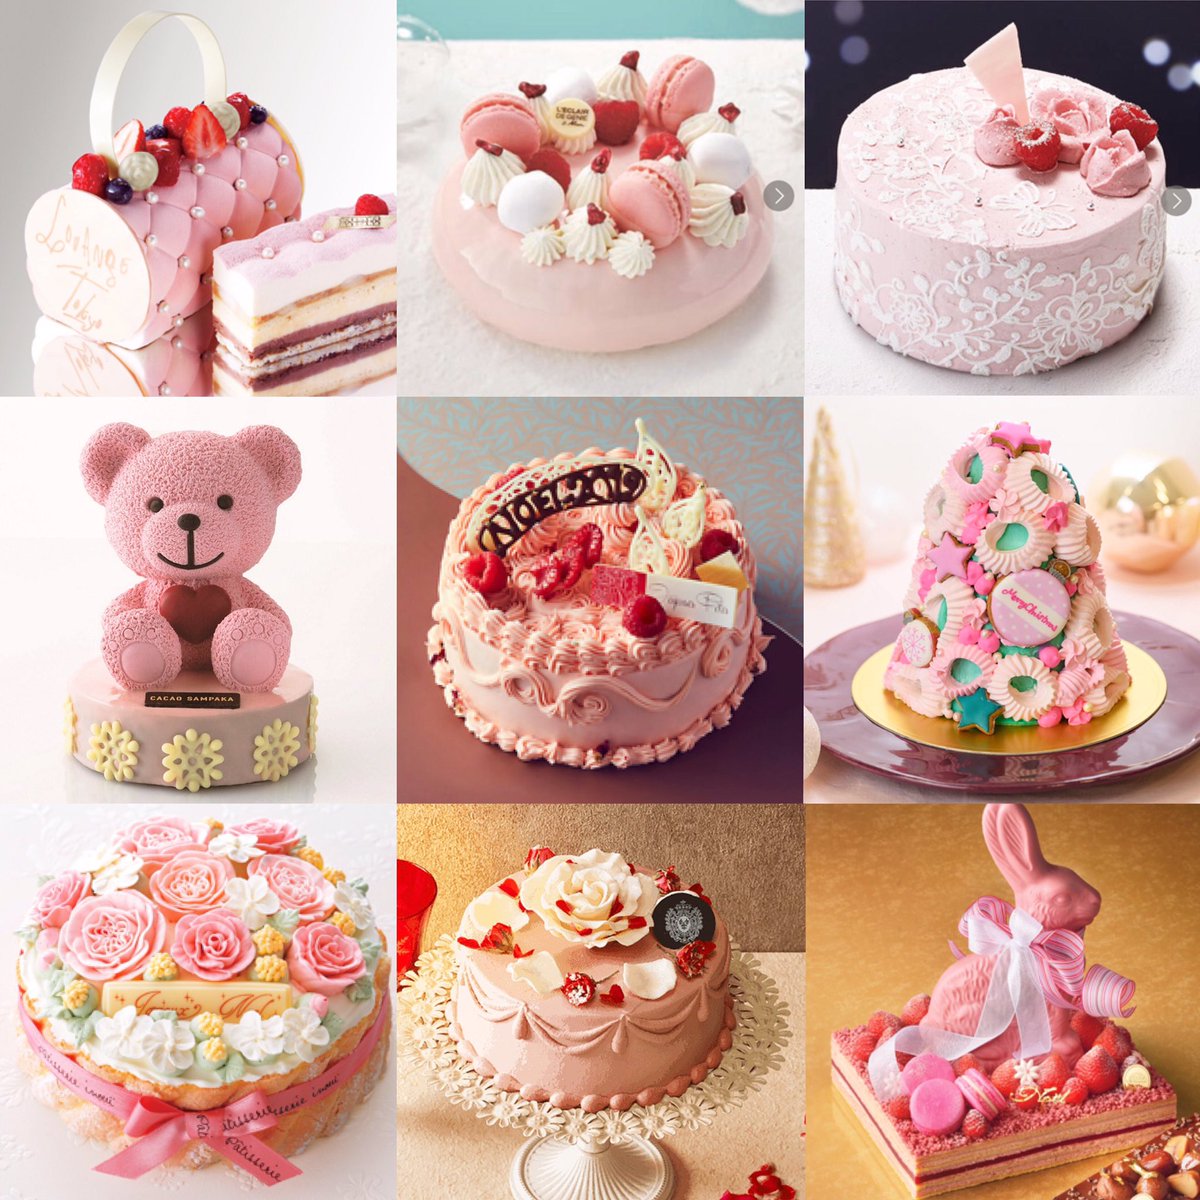 تويتر Chisato على تويتر ピンクのクリスマスケーキ可愛いが過ぎる クリスマスケーキ19 T Co Fe4zsrbqye